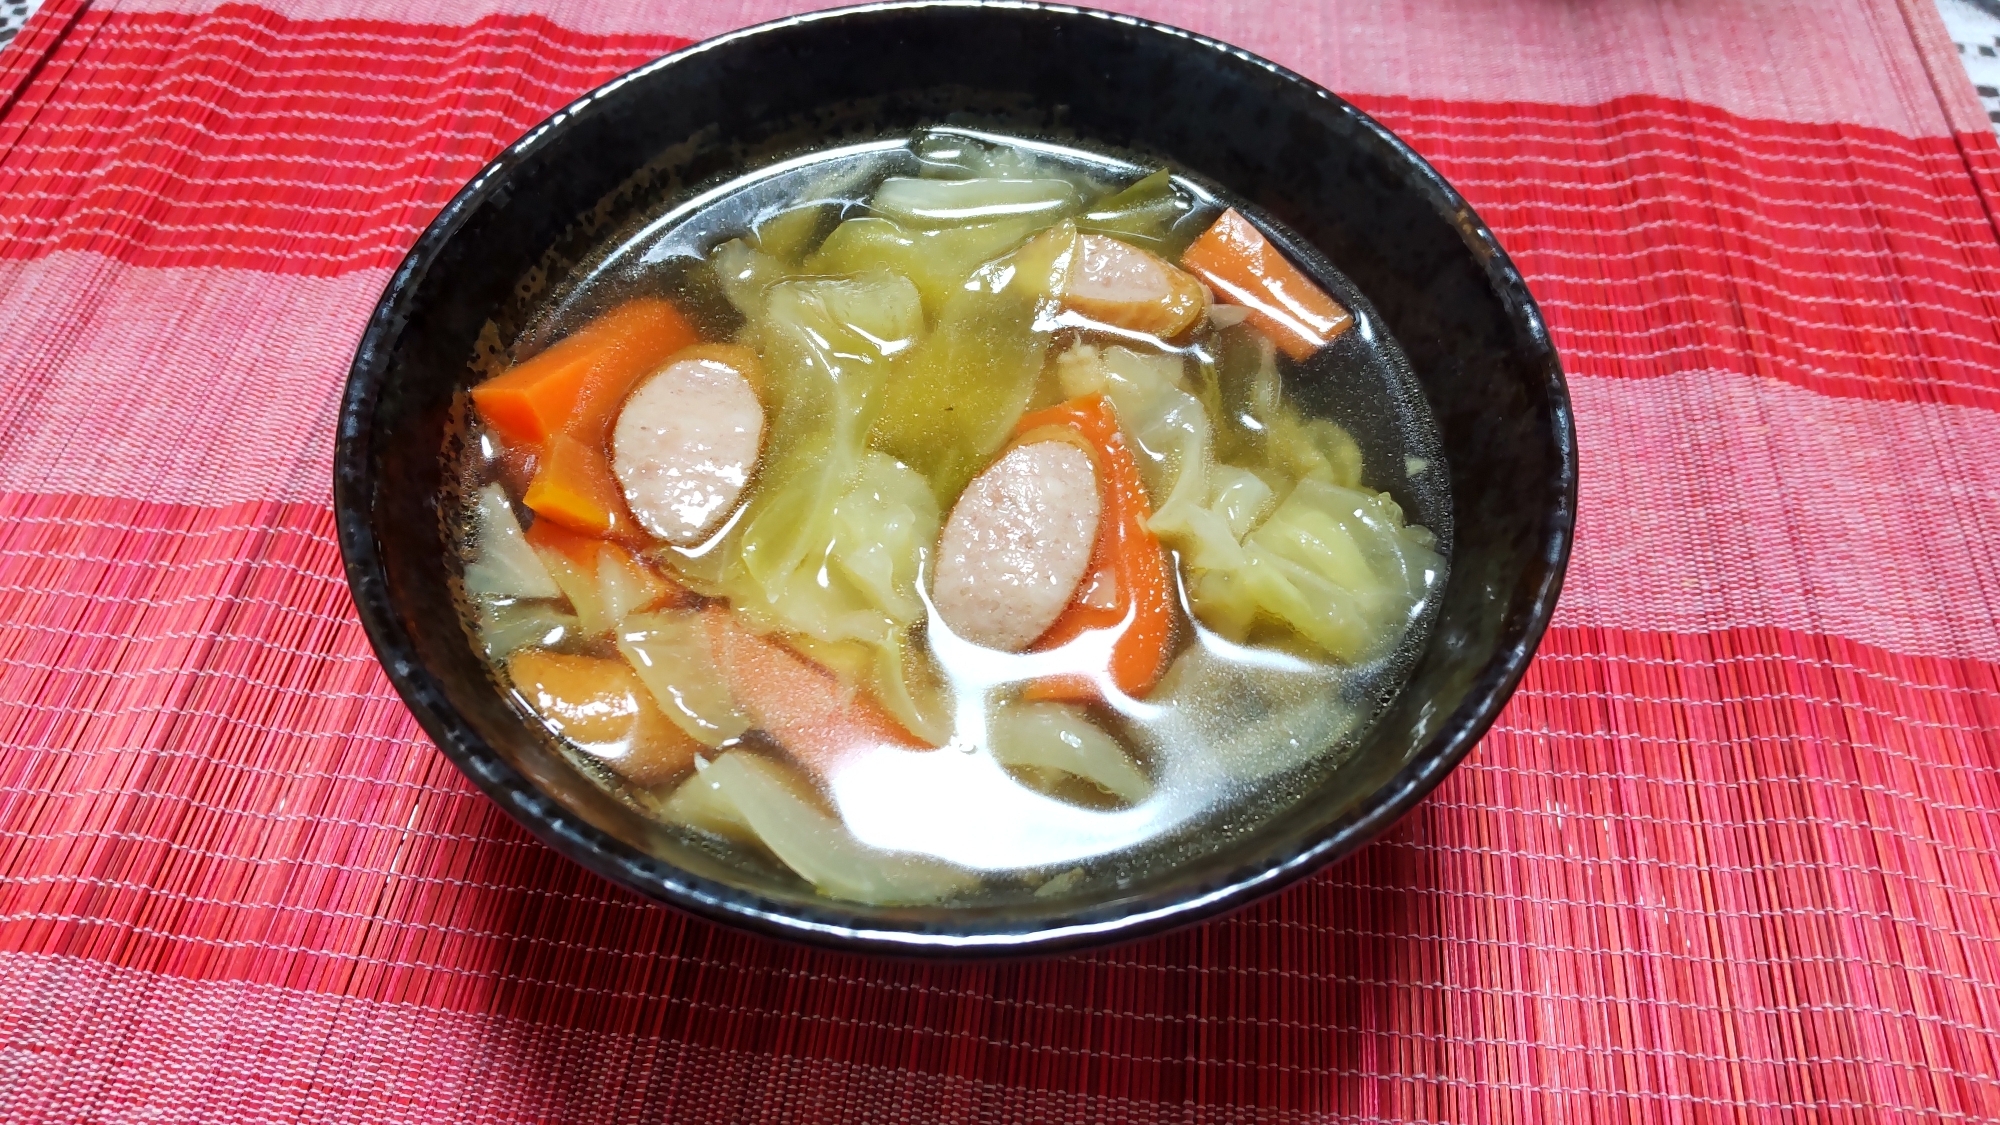 スープレシピ♪ウィンナーと野菜のコンソメスープ〜